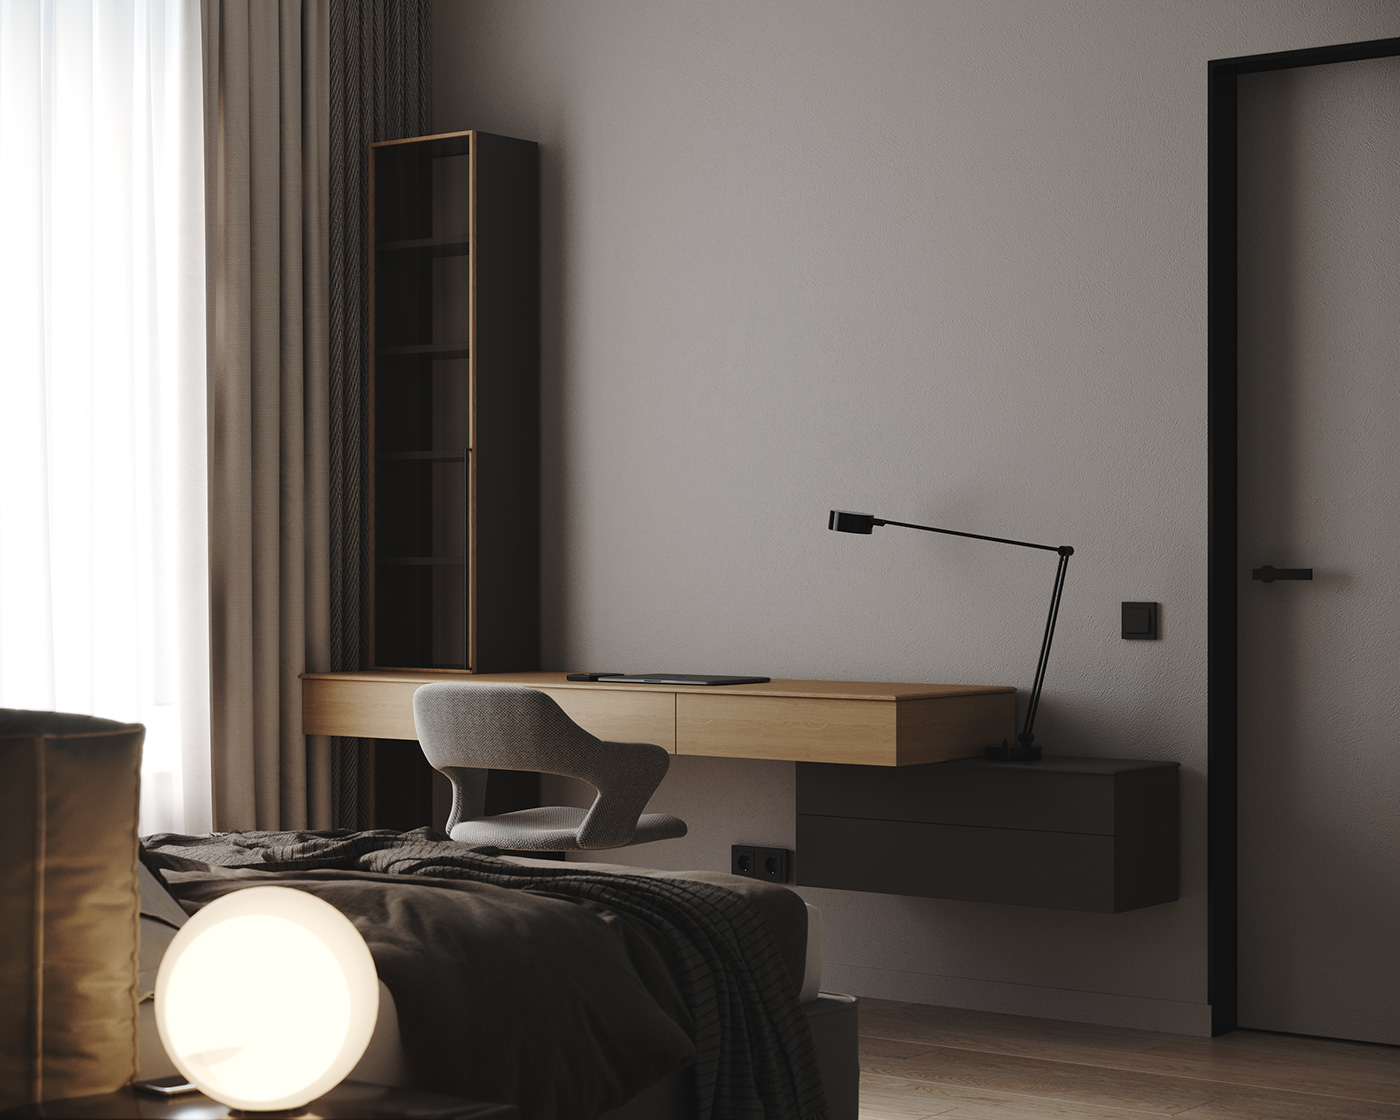 3D 3ds max apartment architecture CGI design Interior interior design  Render visualization